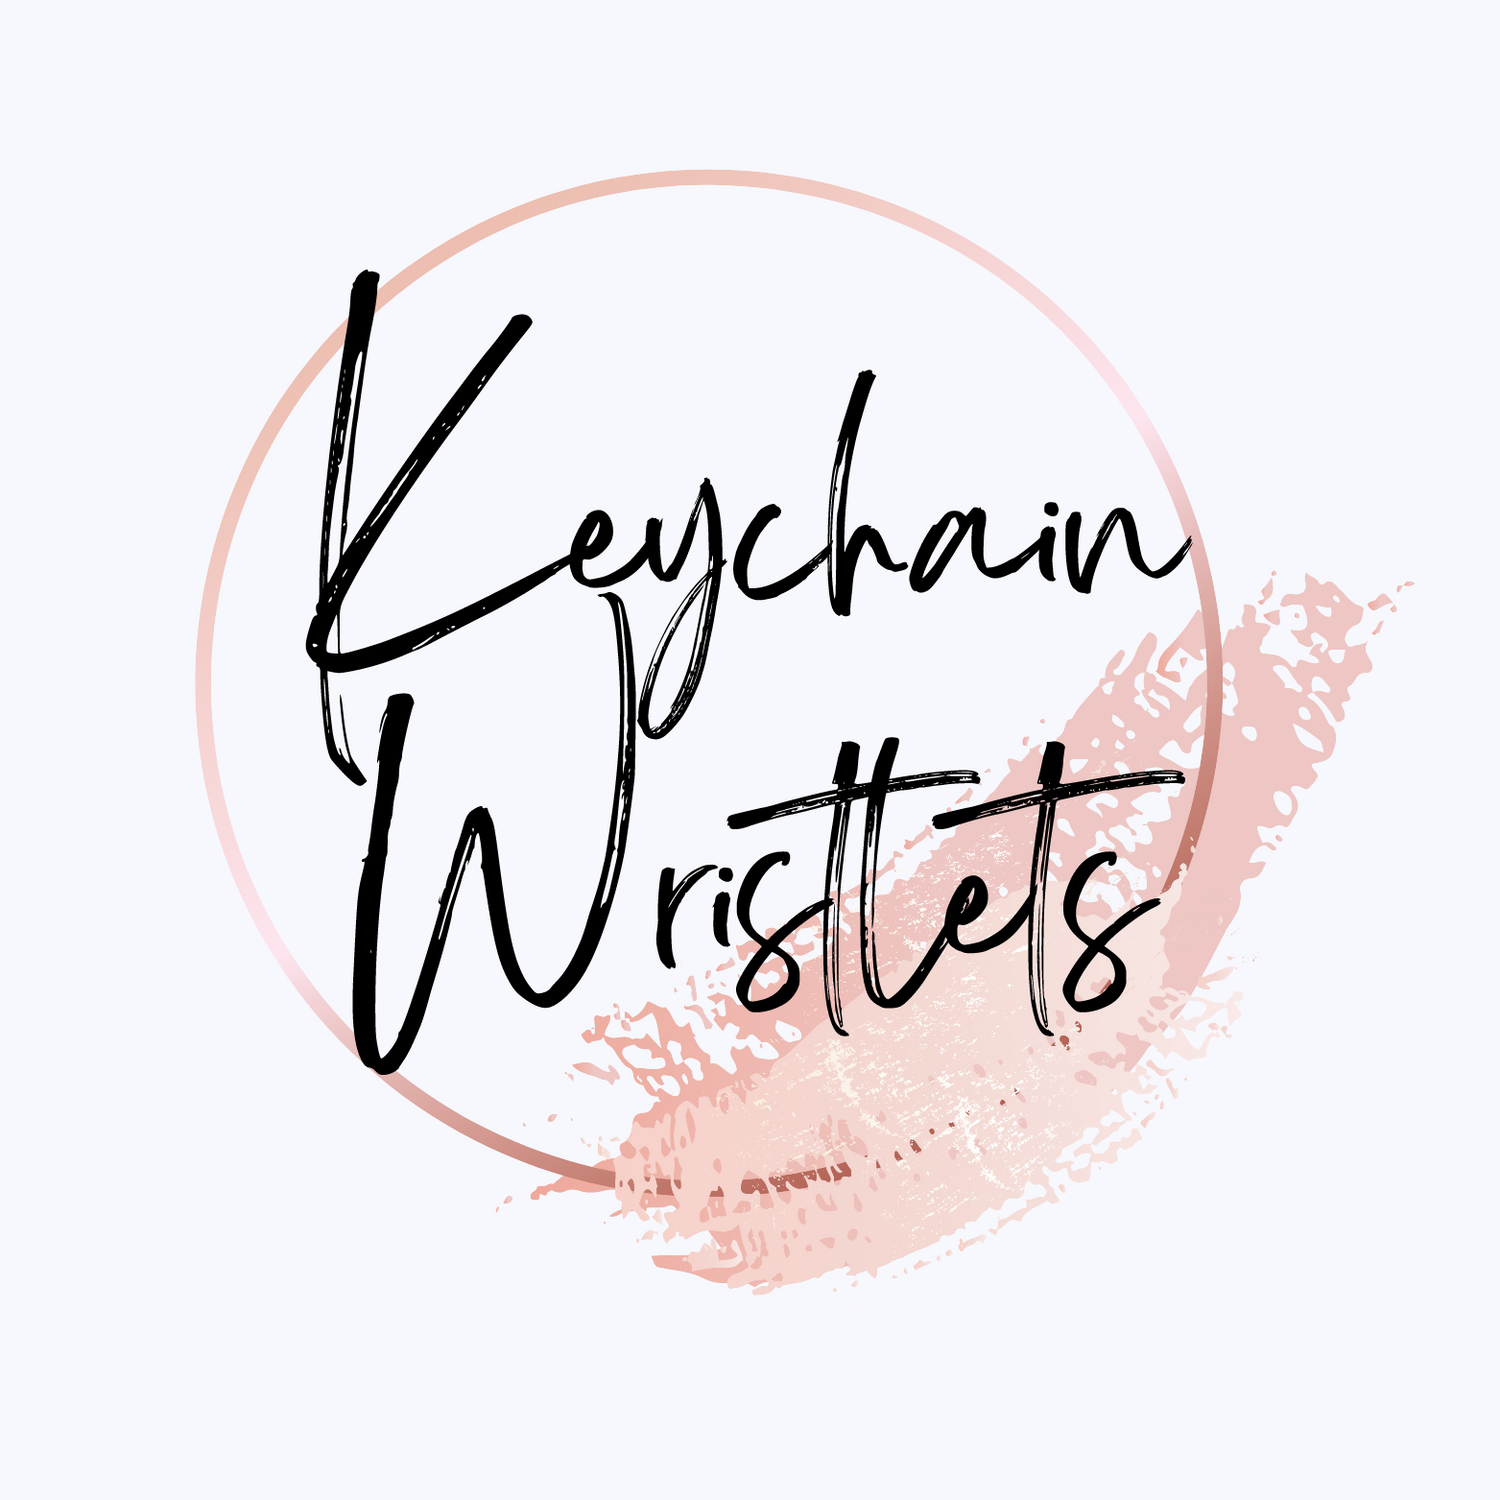 Keychain Wristlets